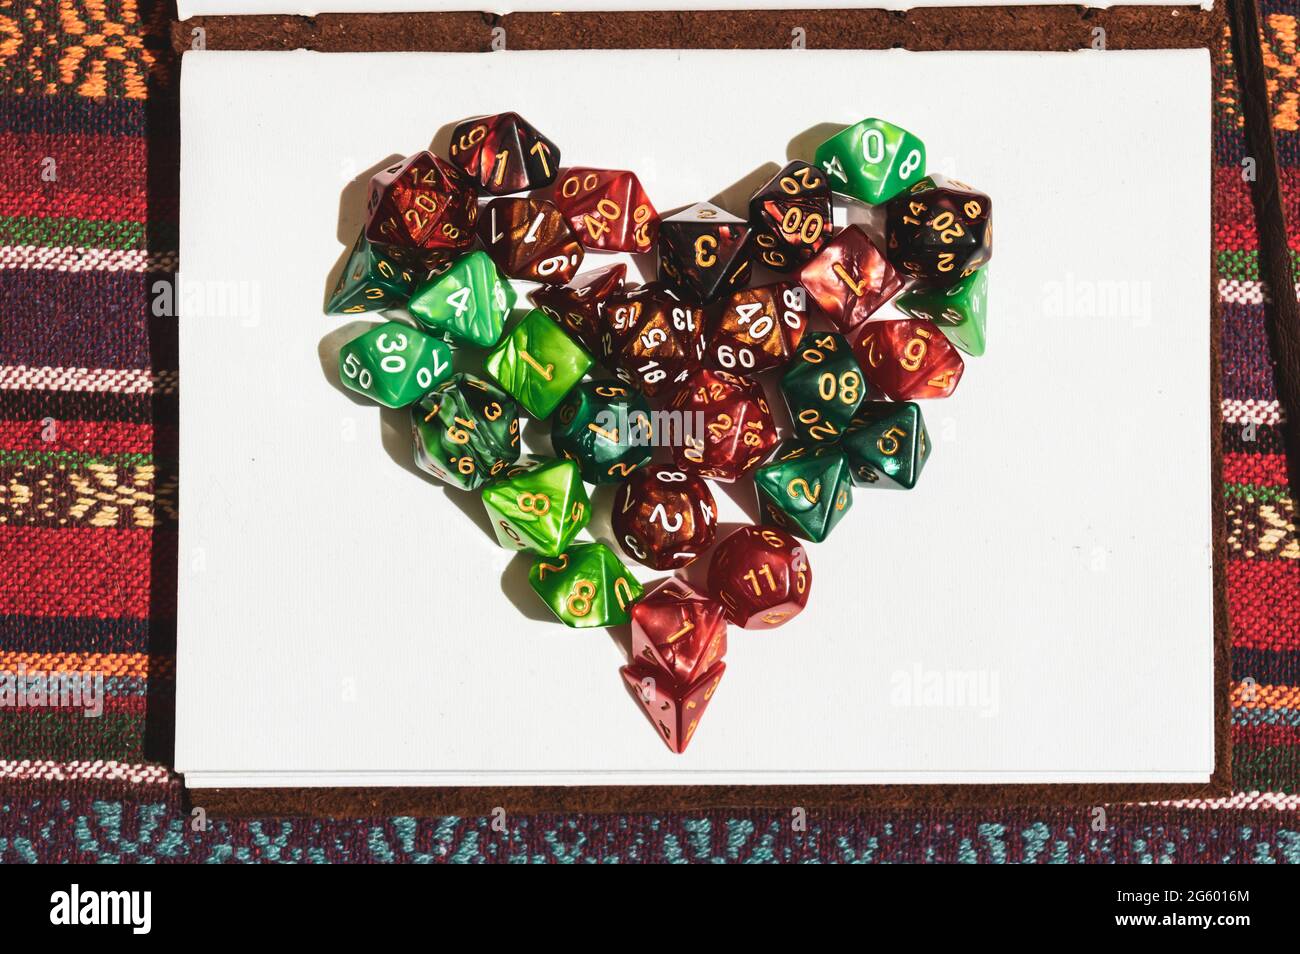 Immagine di un simbolo del cuore creato con dadi di gioco di ruolo verdi e rossi sulla parte superiore di un notebook aperto al sole Foto Stock